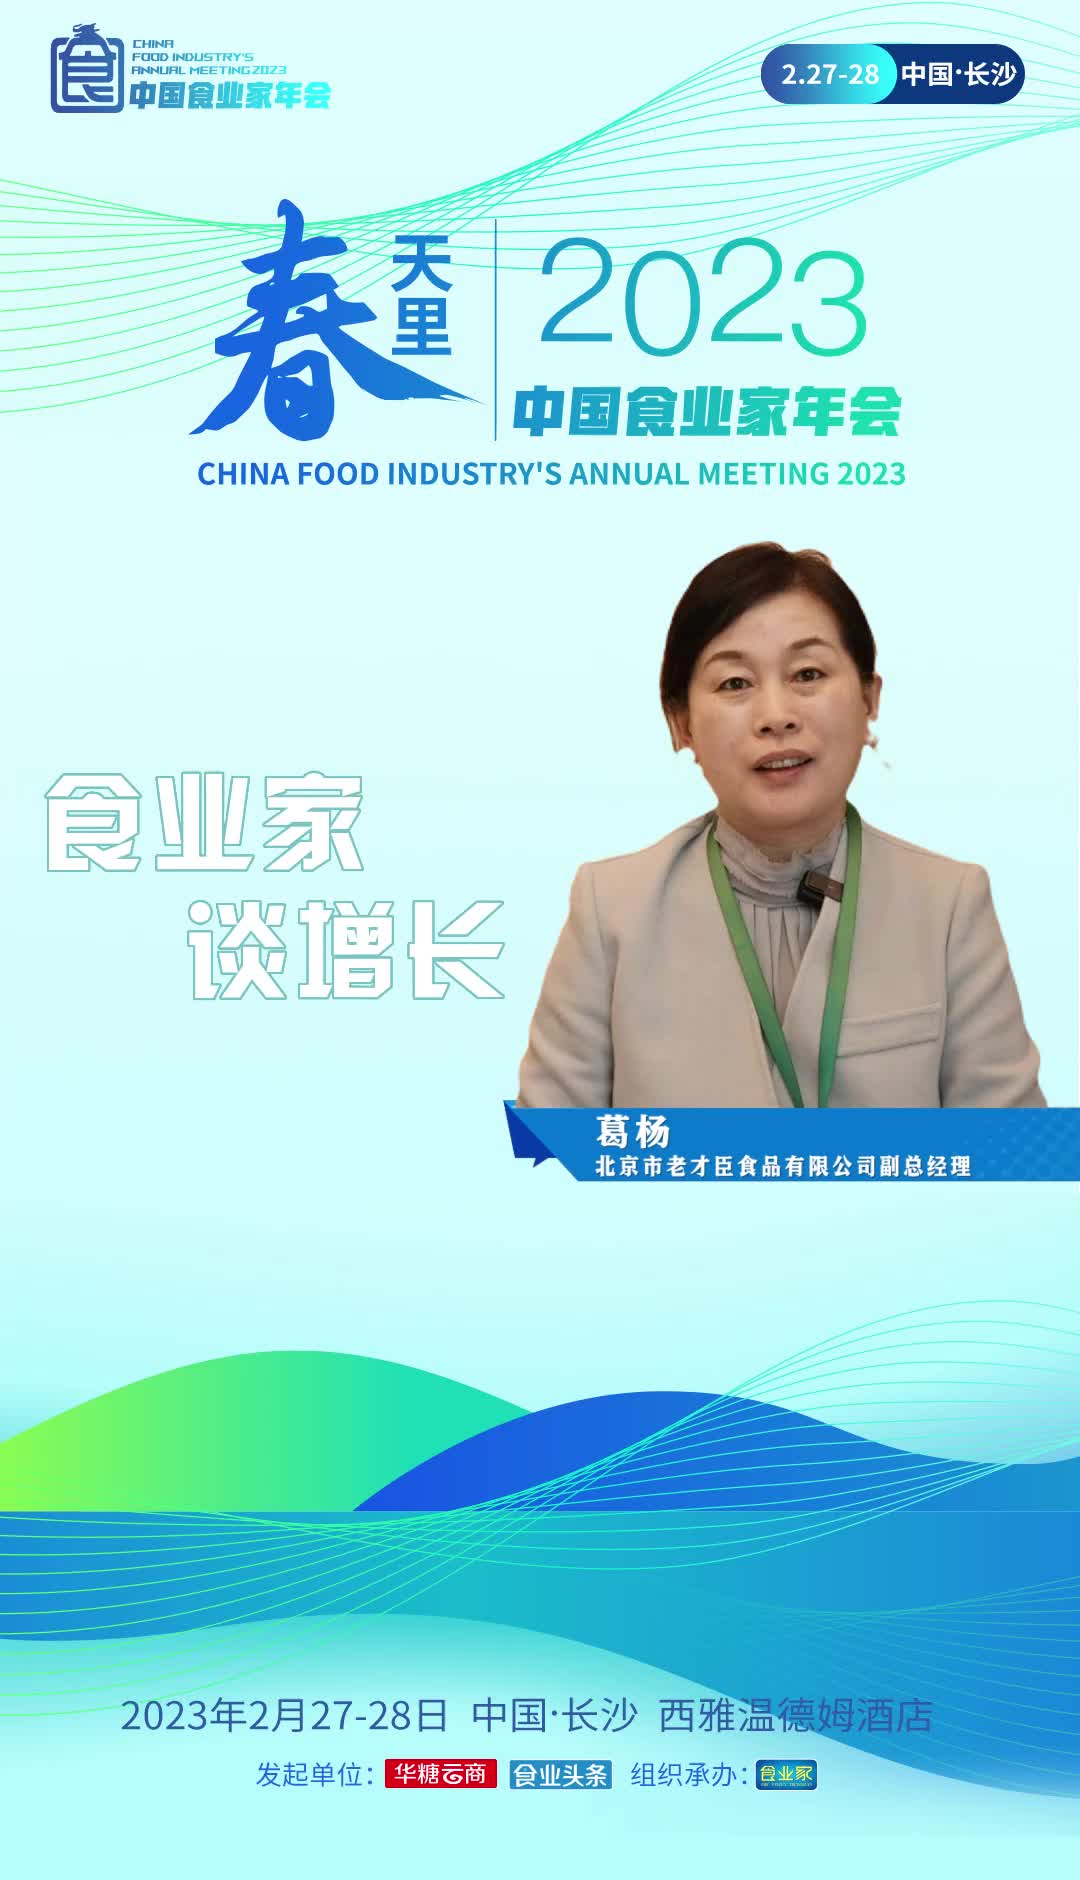 北京市老才臣食品有限公司副总经理葛杨表示，2023年将继续研发健康高品质产品，满足消费者餐桌的需求。